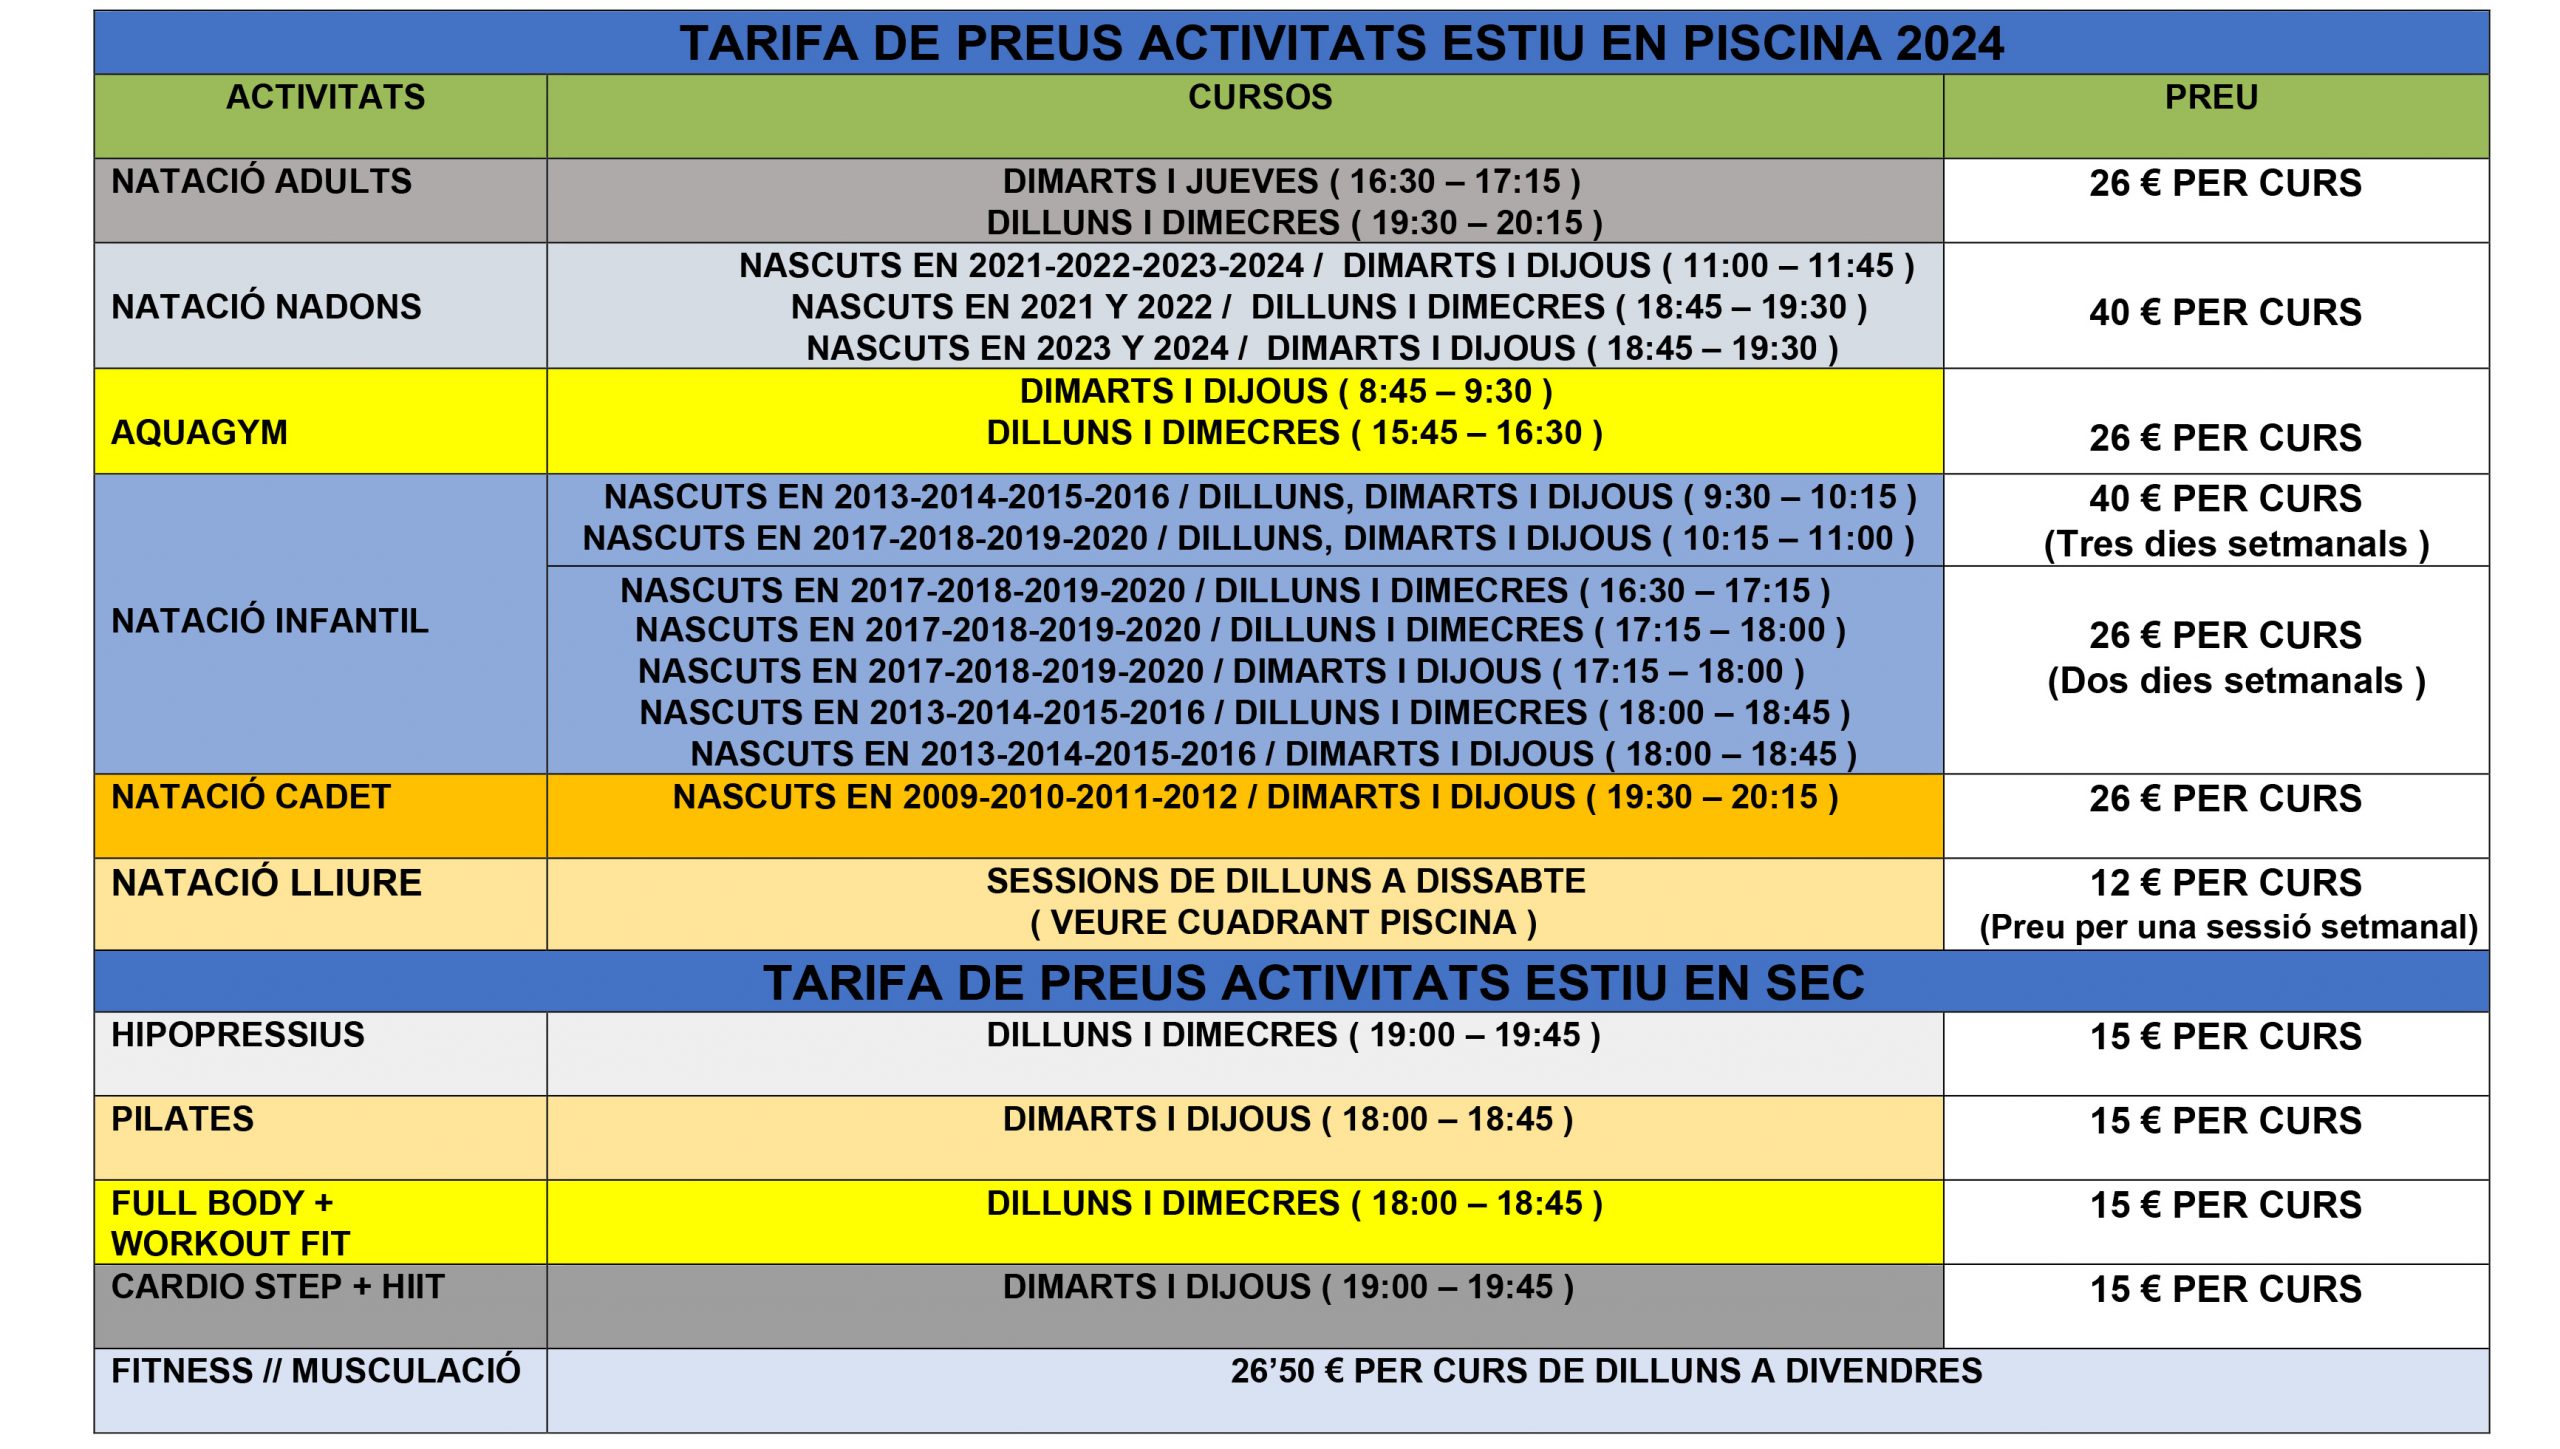 TARIFA PRECIOS ACTIVIDADES PISCINA Y GIMNASIO JULIO 2024 vlc